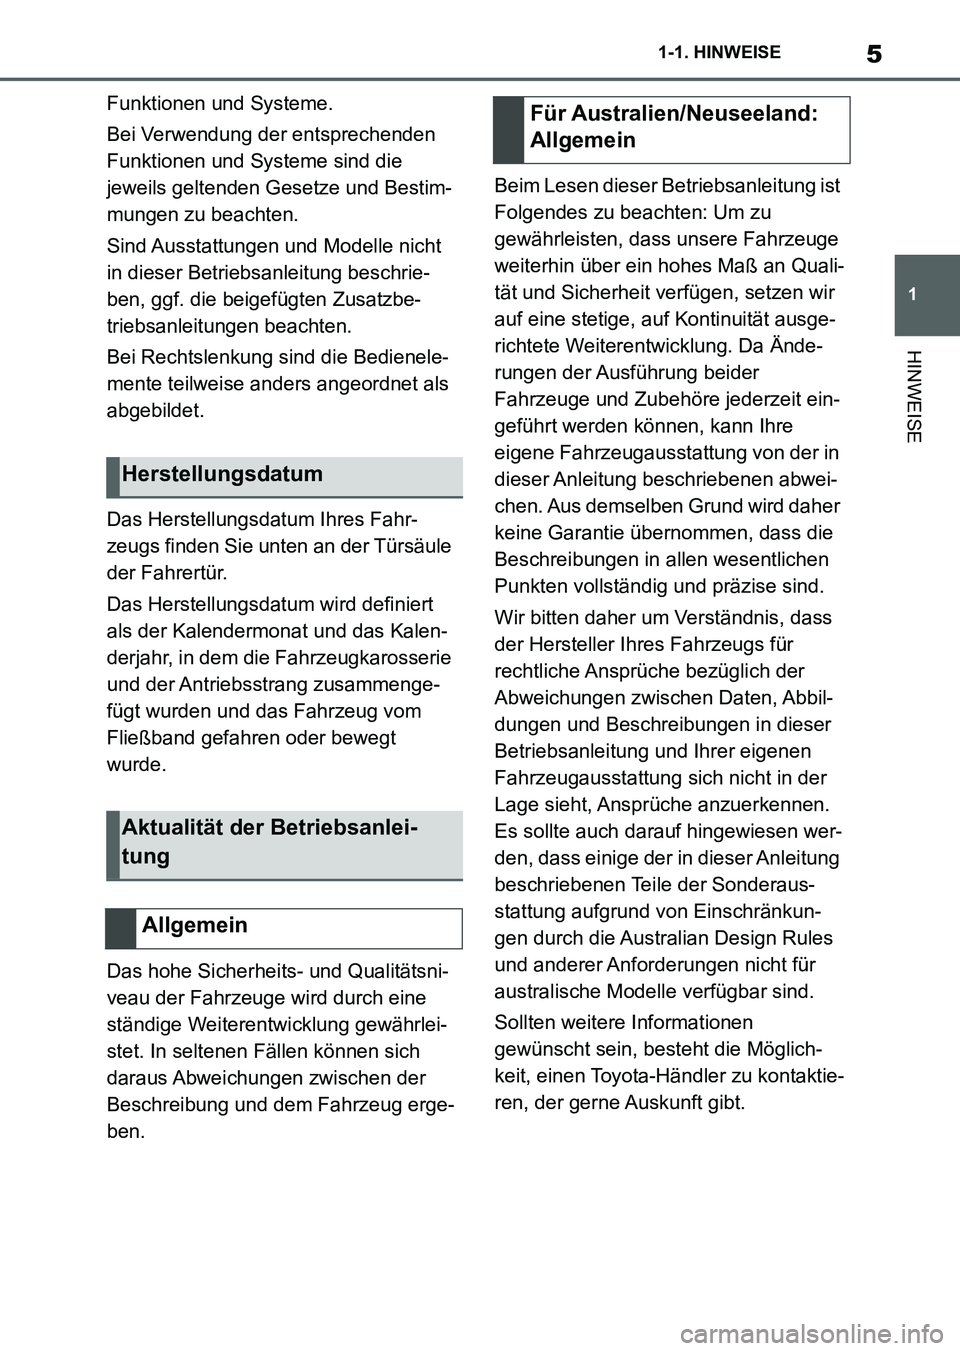 TOYOTA SUPRA 2022  Betriebsanleitungen (in German) 5
1 1-1. HINWEISE
HINWEISE
Funktionen und Systeme.
Bei Verwendung der entsprechenden 
Funktionen und Systeme sind die 
jeweils geltenden Gesetze und Bestim-
mungen zu beachten.
Sind Ausstattungen und 